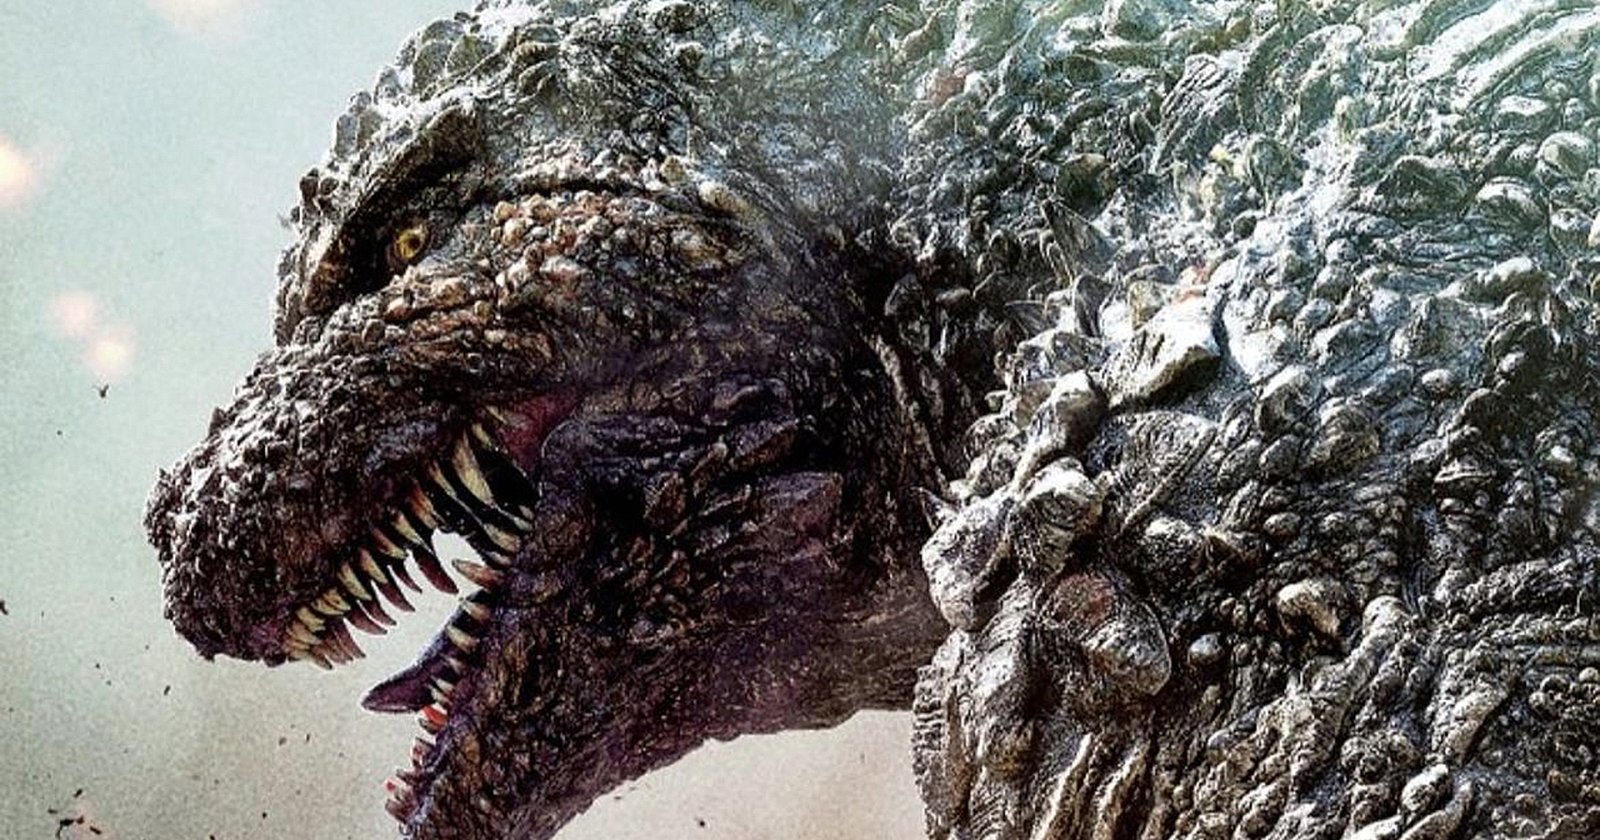 สมศักดิ์ศรี! ‘Godzilla Minus One’ เป็นหนัง ‘Godzilla’ เรื่องแรกในประวัติศาสตร์ 70 ปี ที่ได้ชิงออสการ์